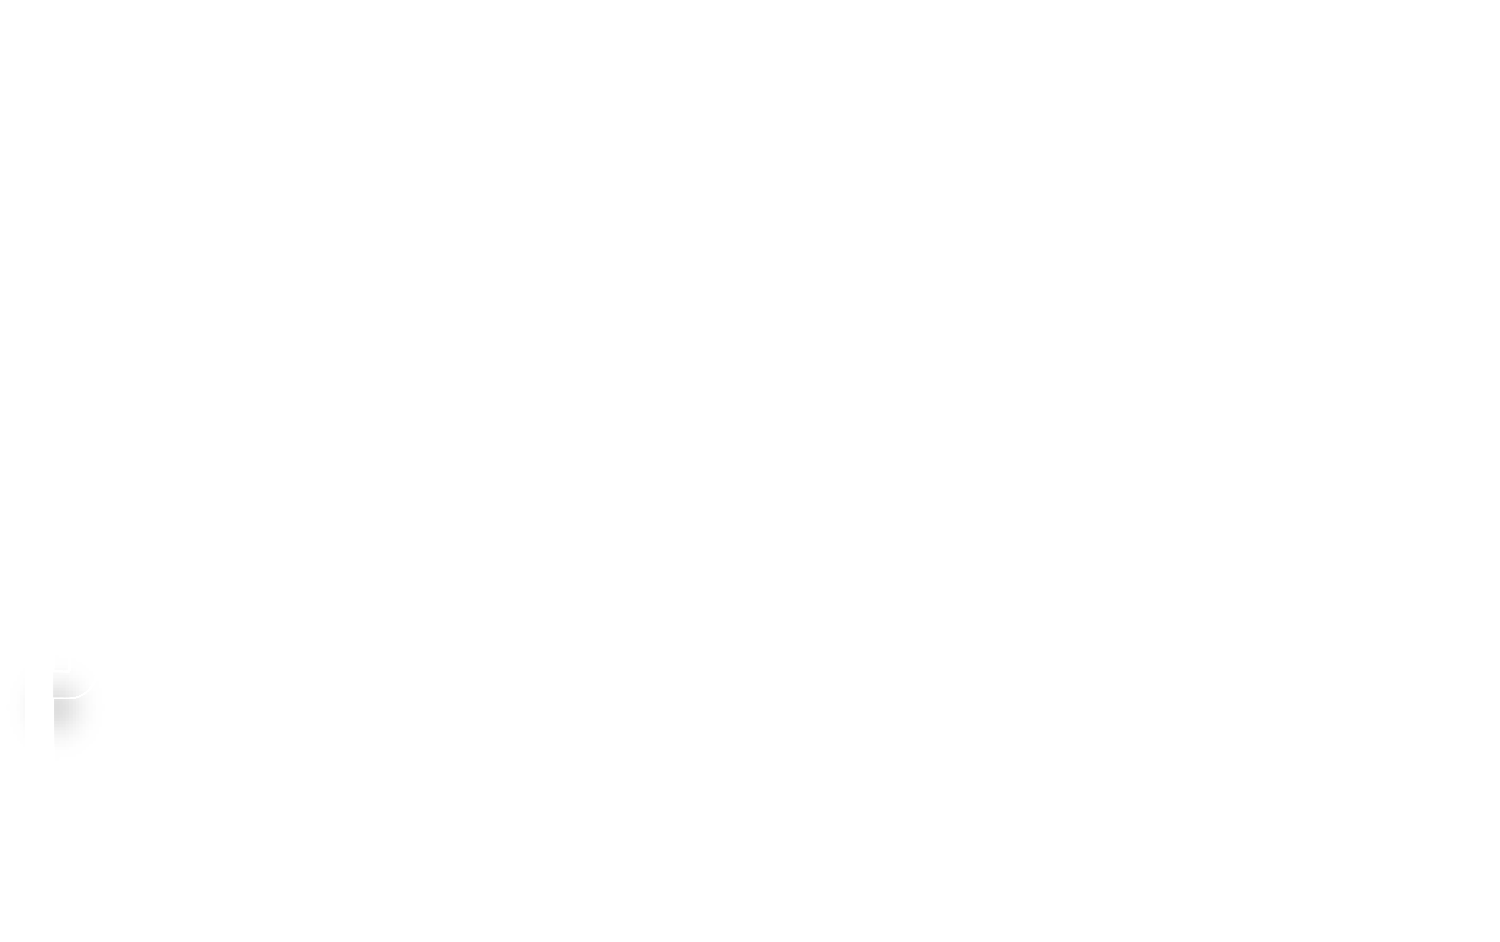 Shadowfax Audio Systems